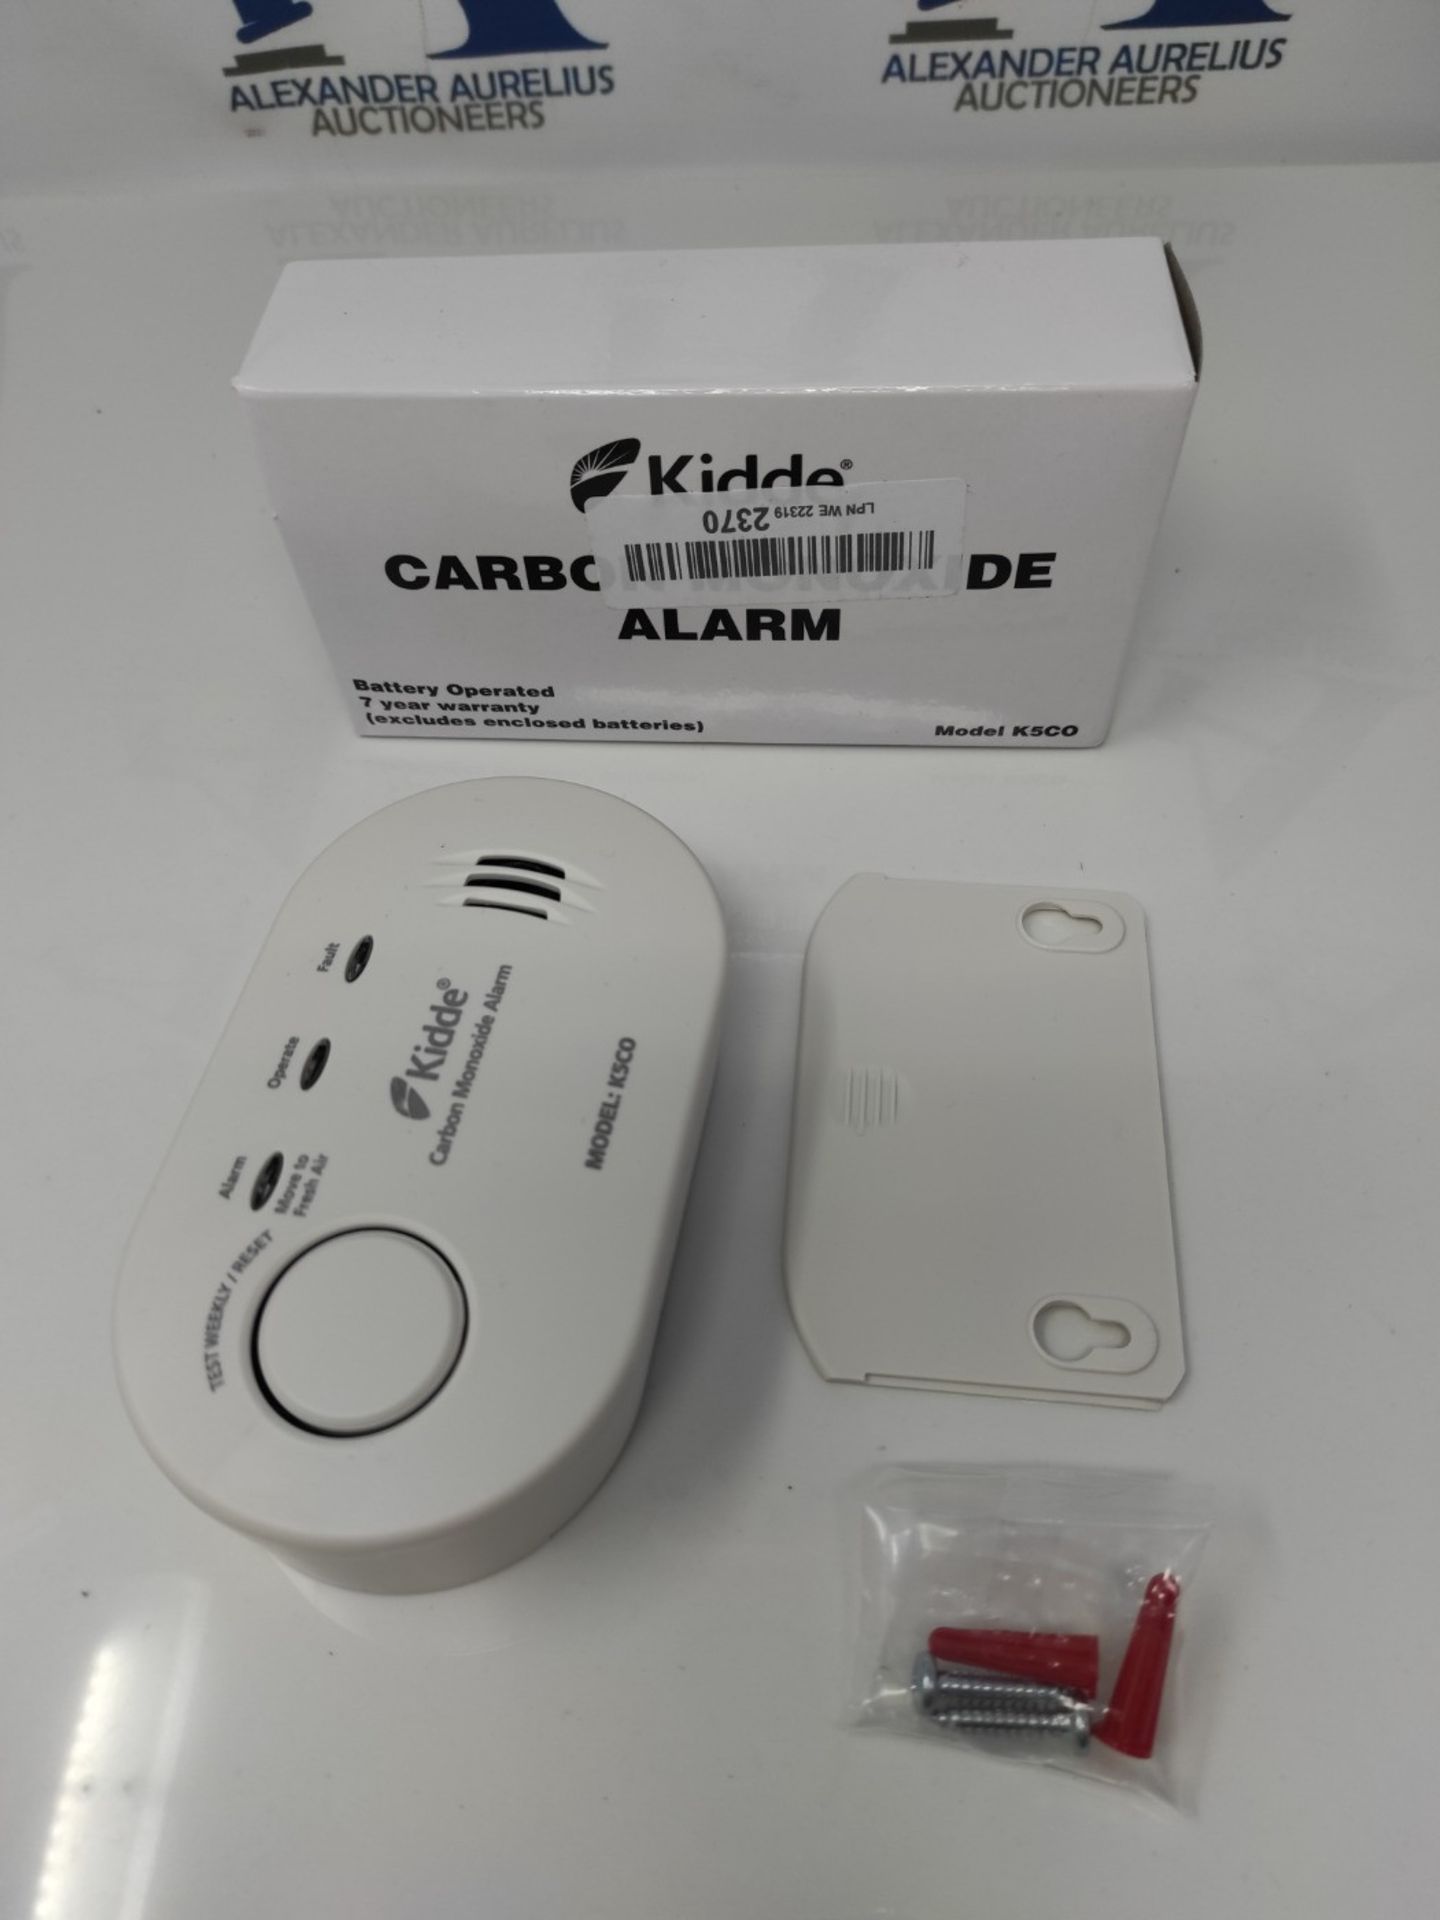 Kidde Carbon Monoxide Alarm - 2 Pack - Image 2 of 3